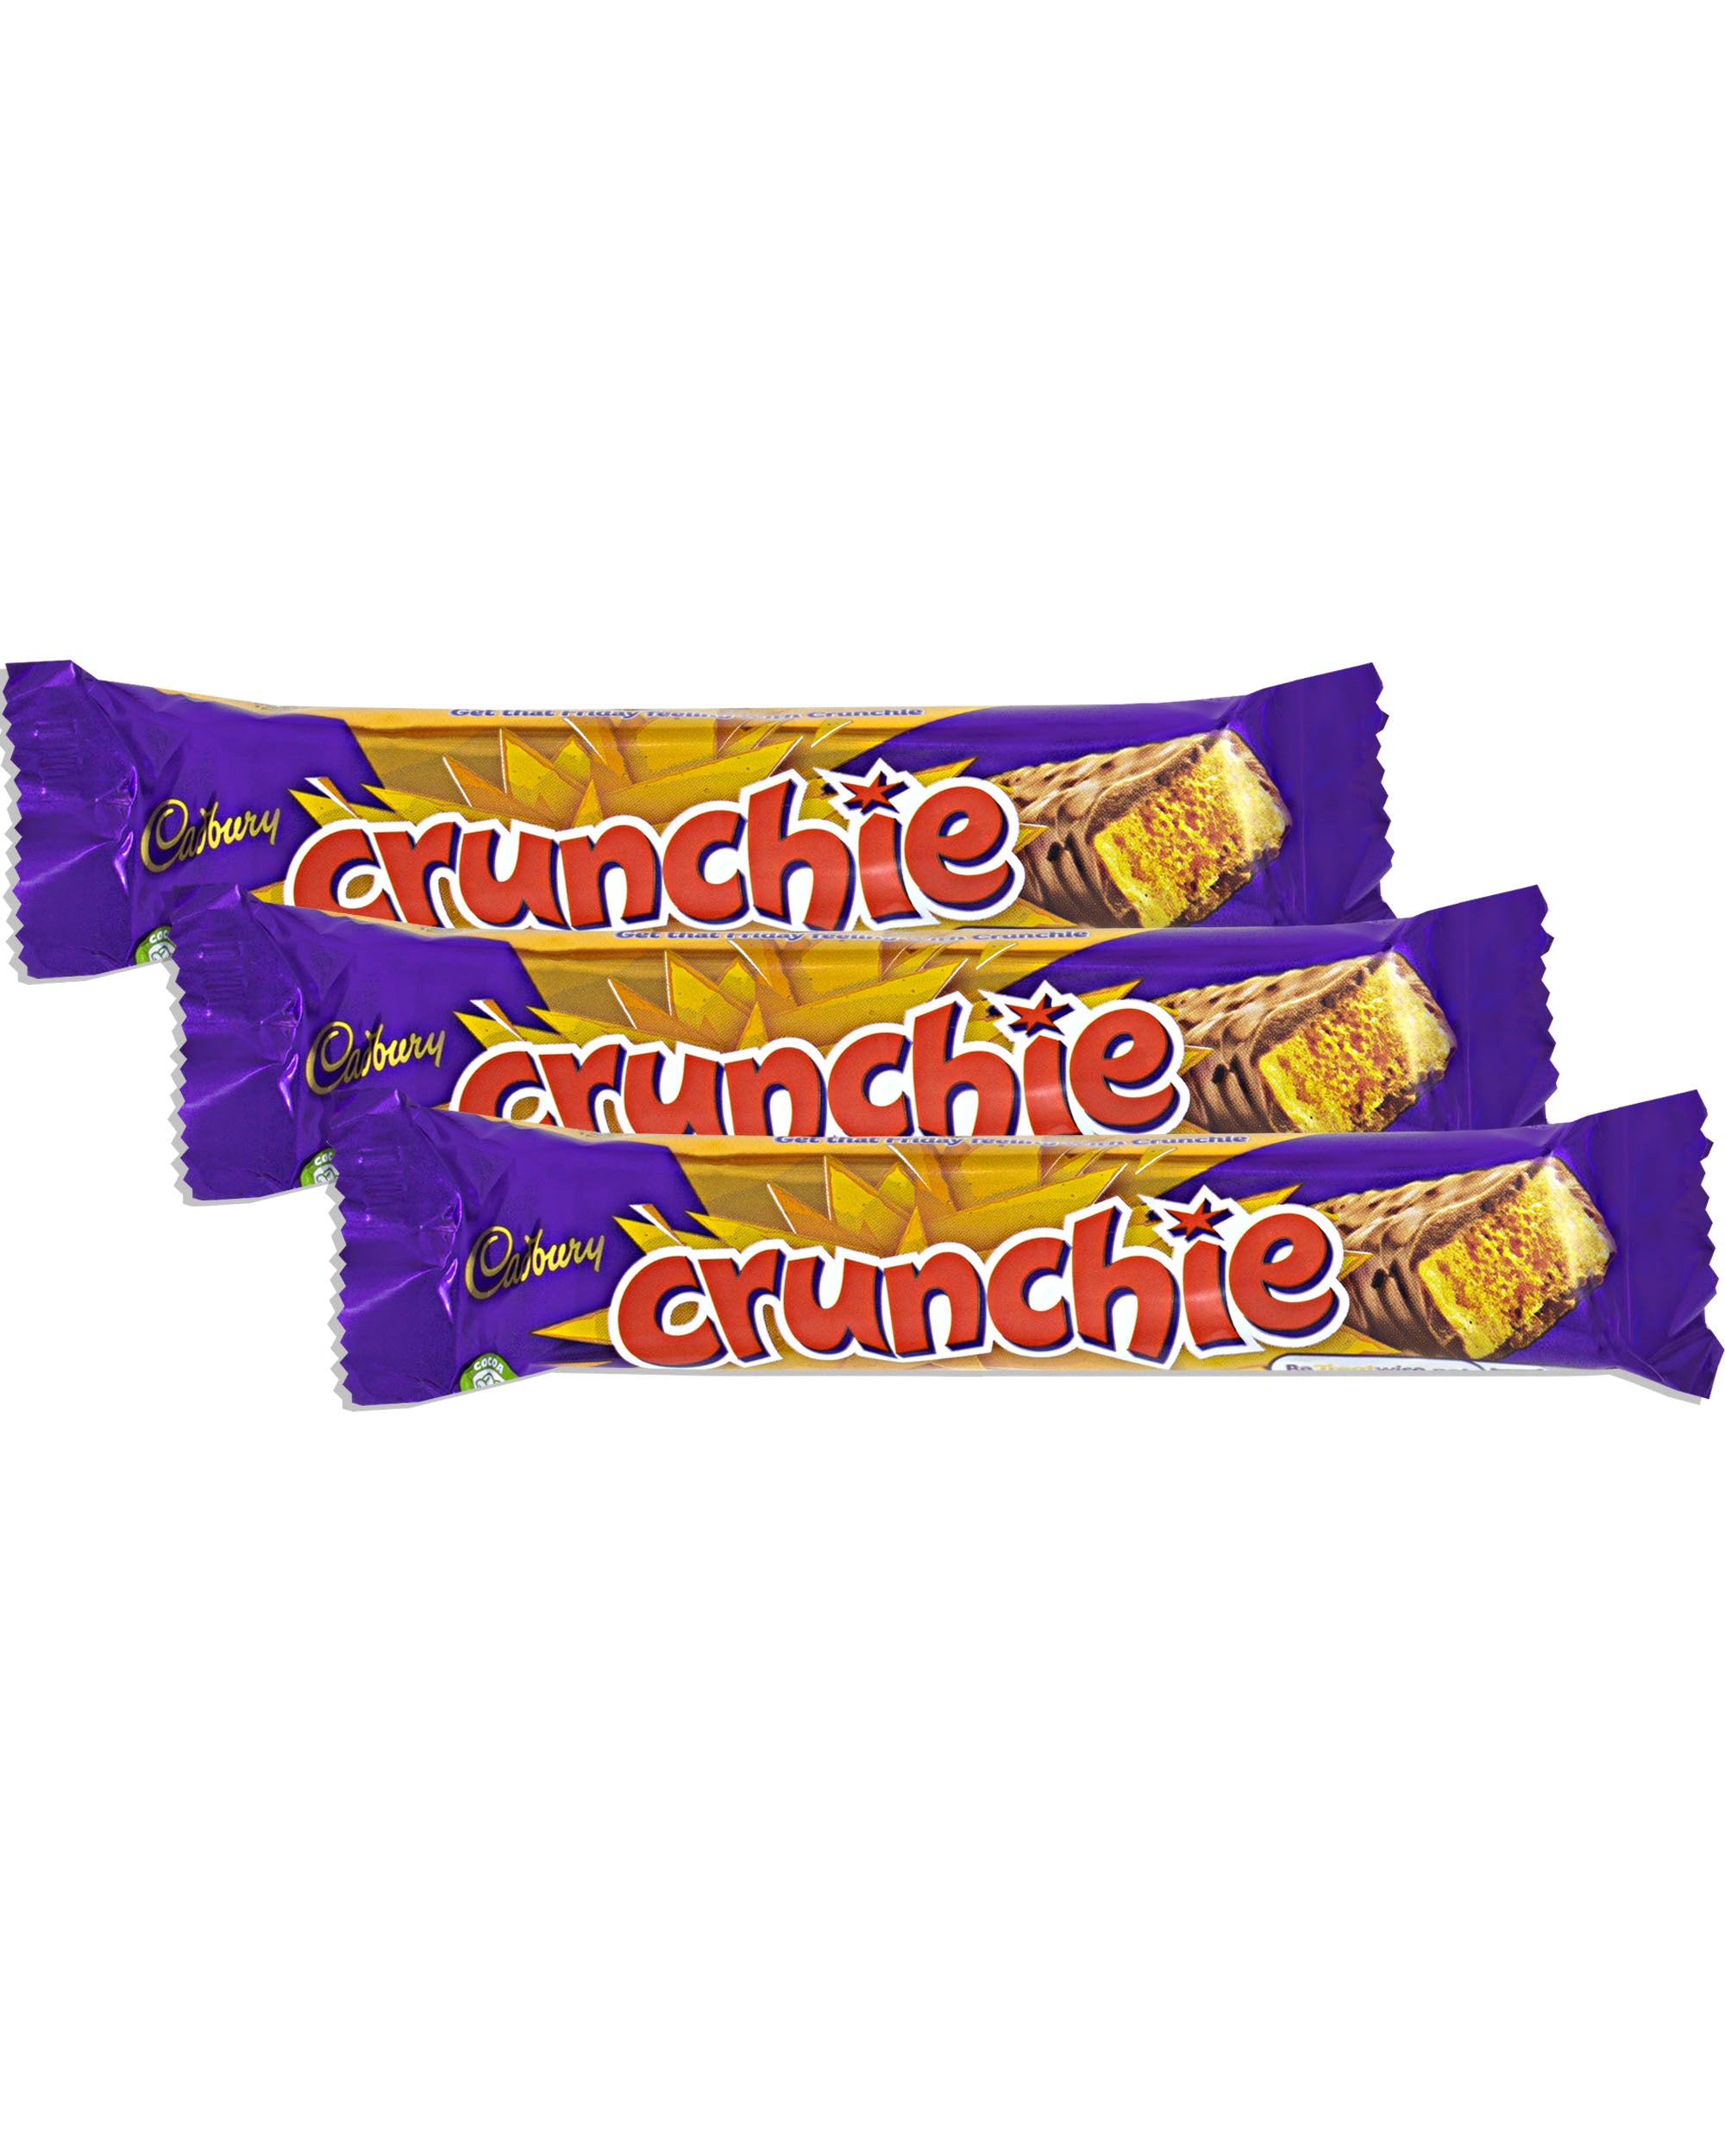 Cadbury crunchie